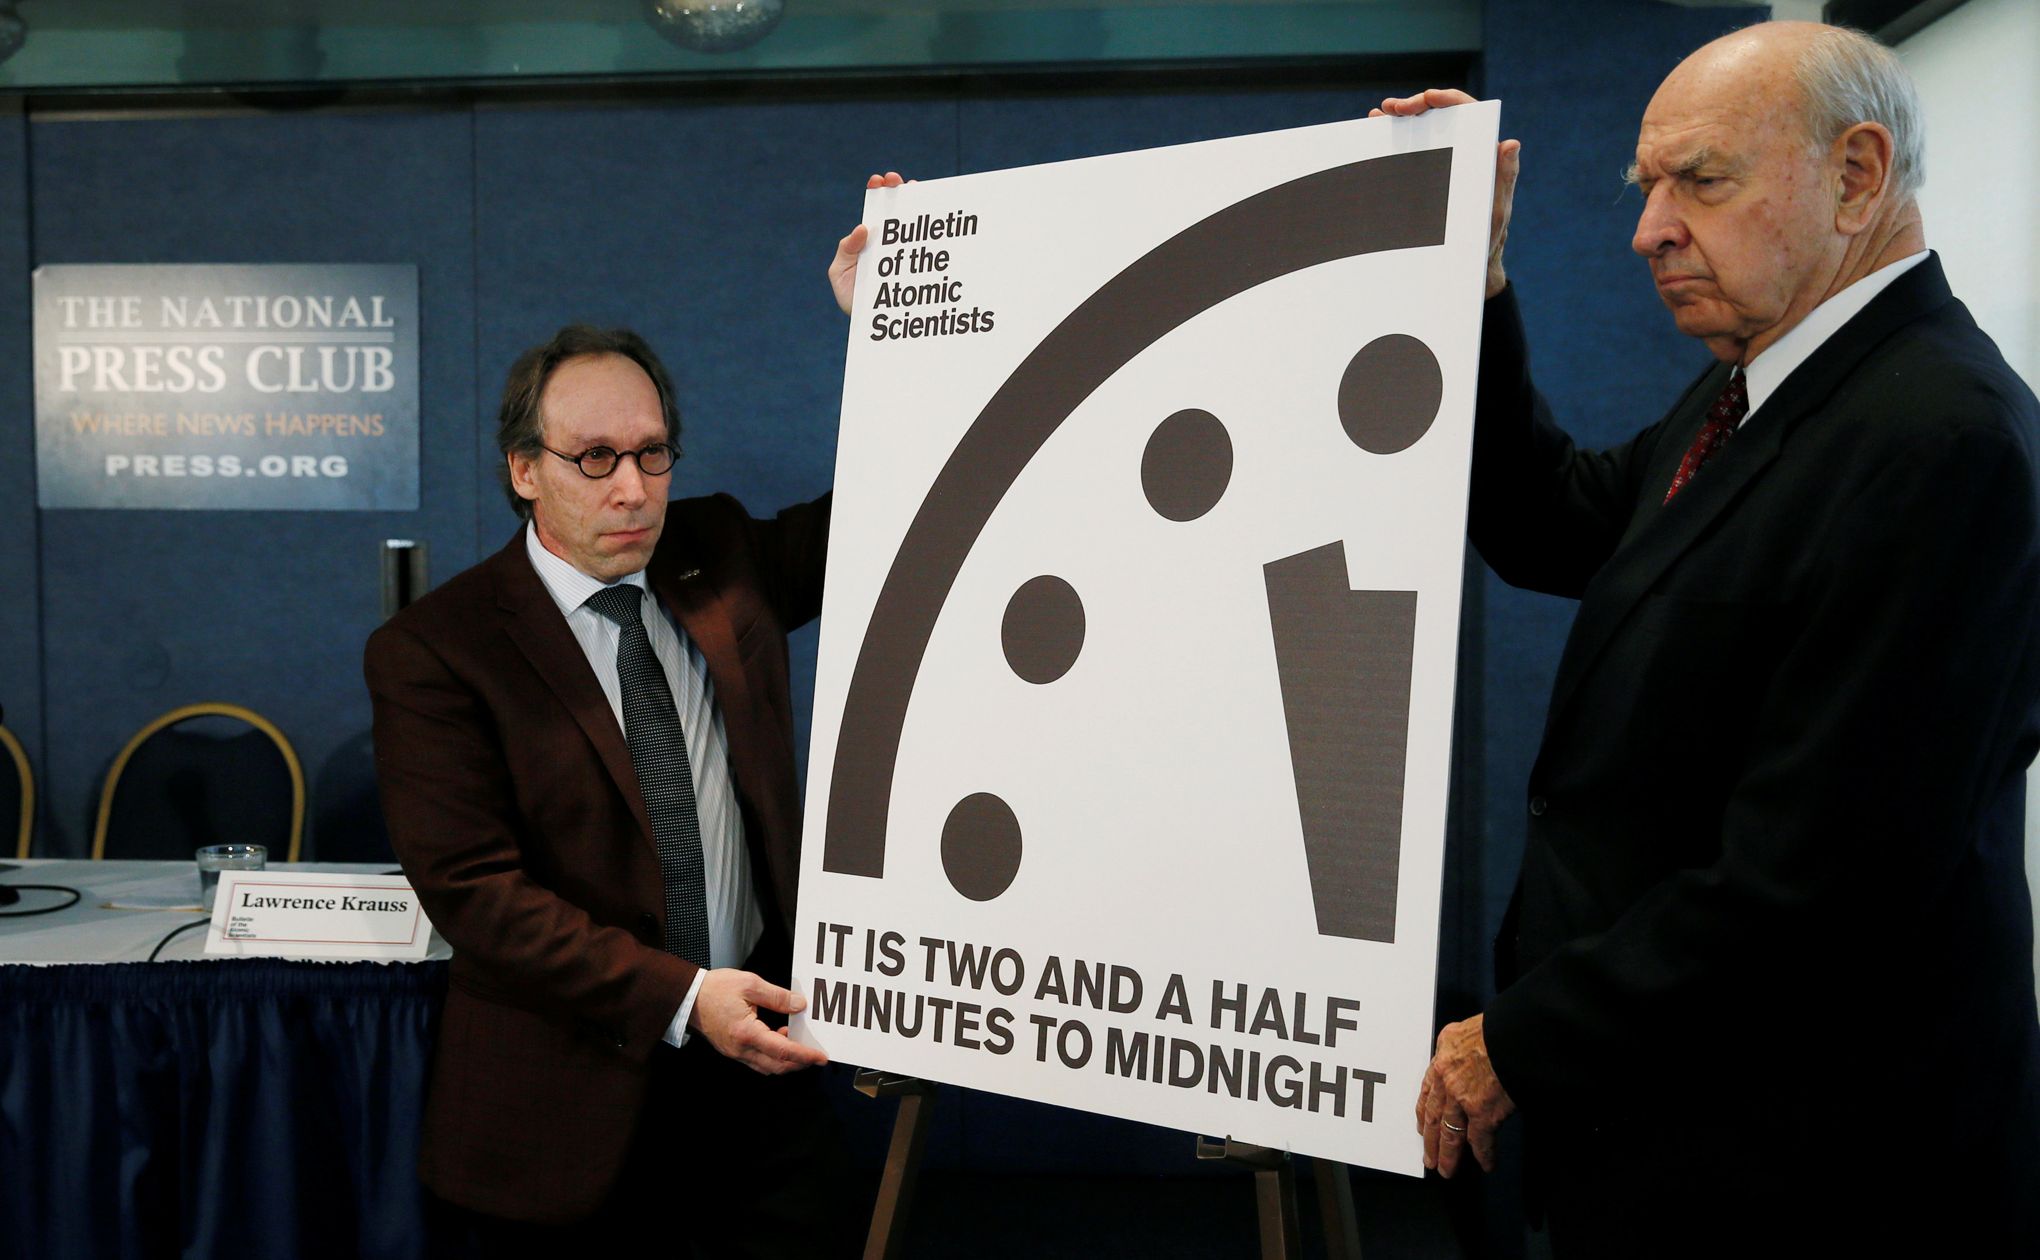 Il est minuit moins deux minutes trente avant la fin du monde | Lefigaro.fr